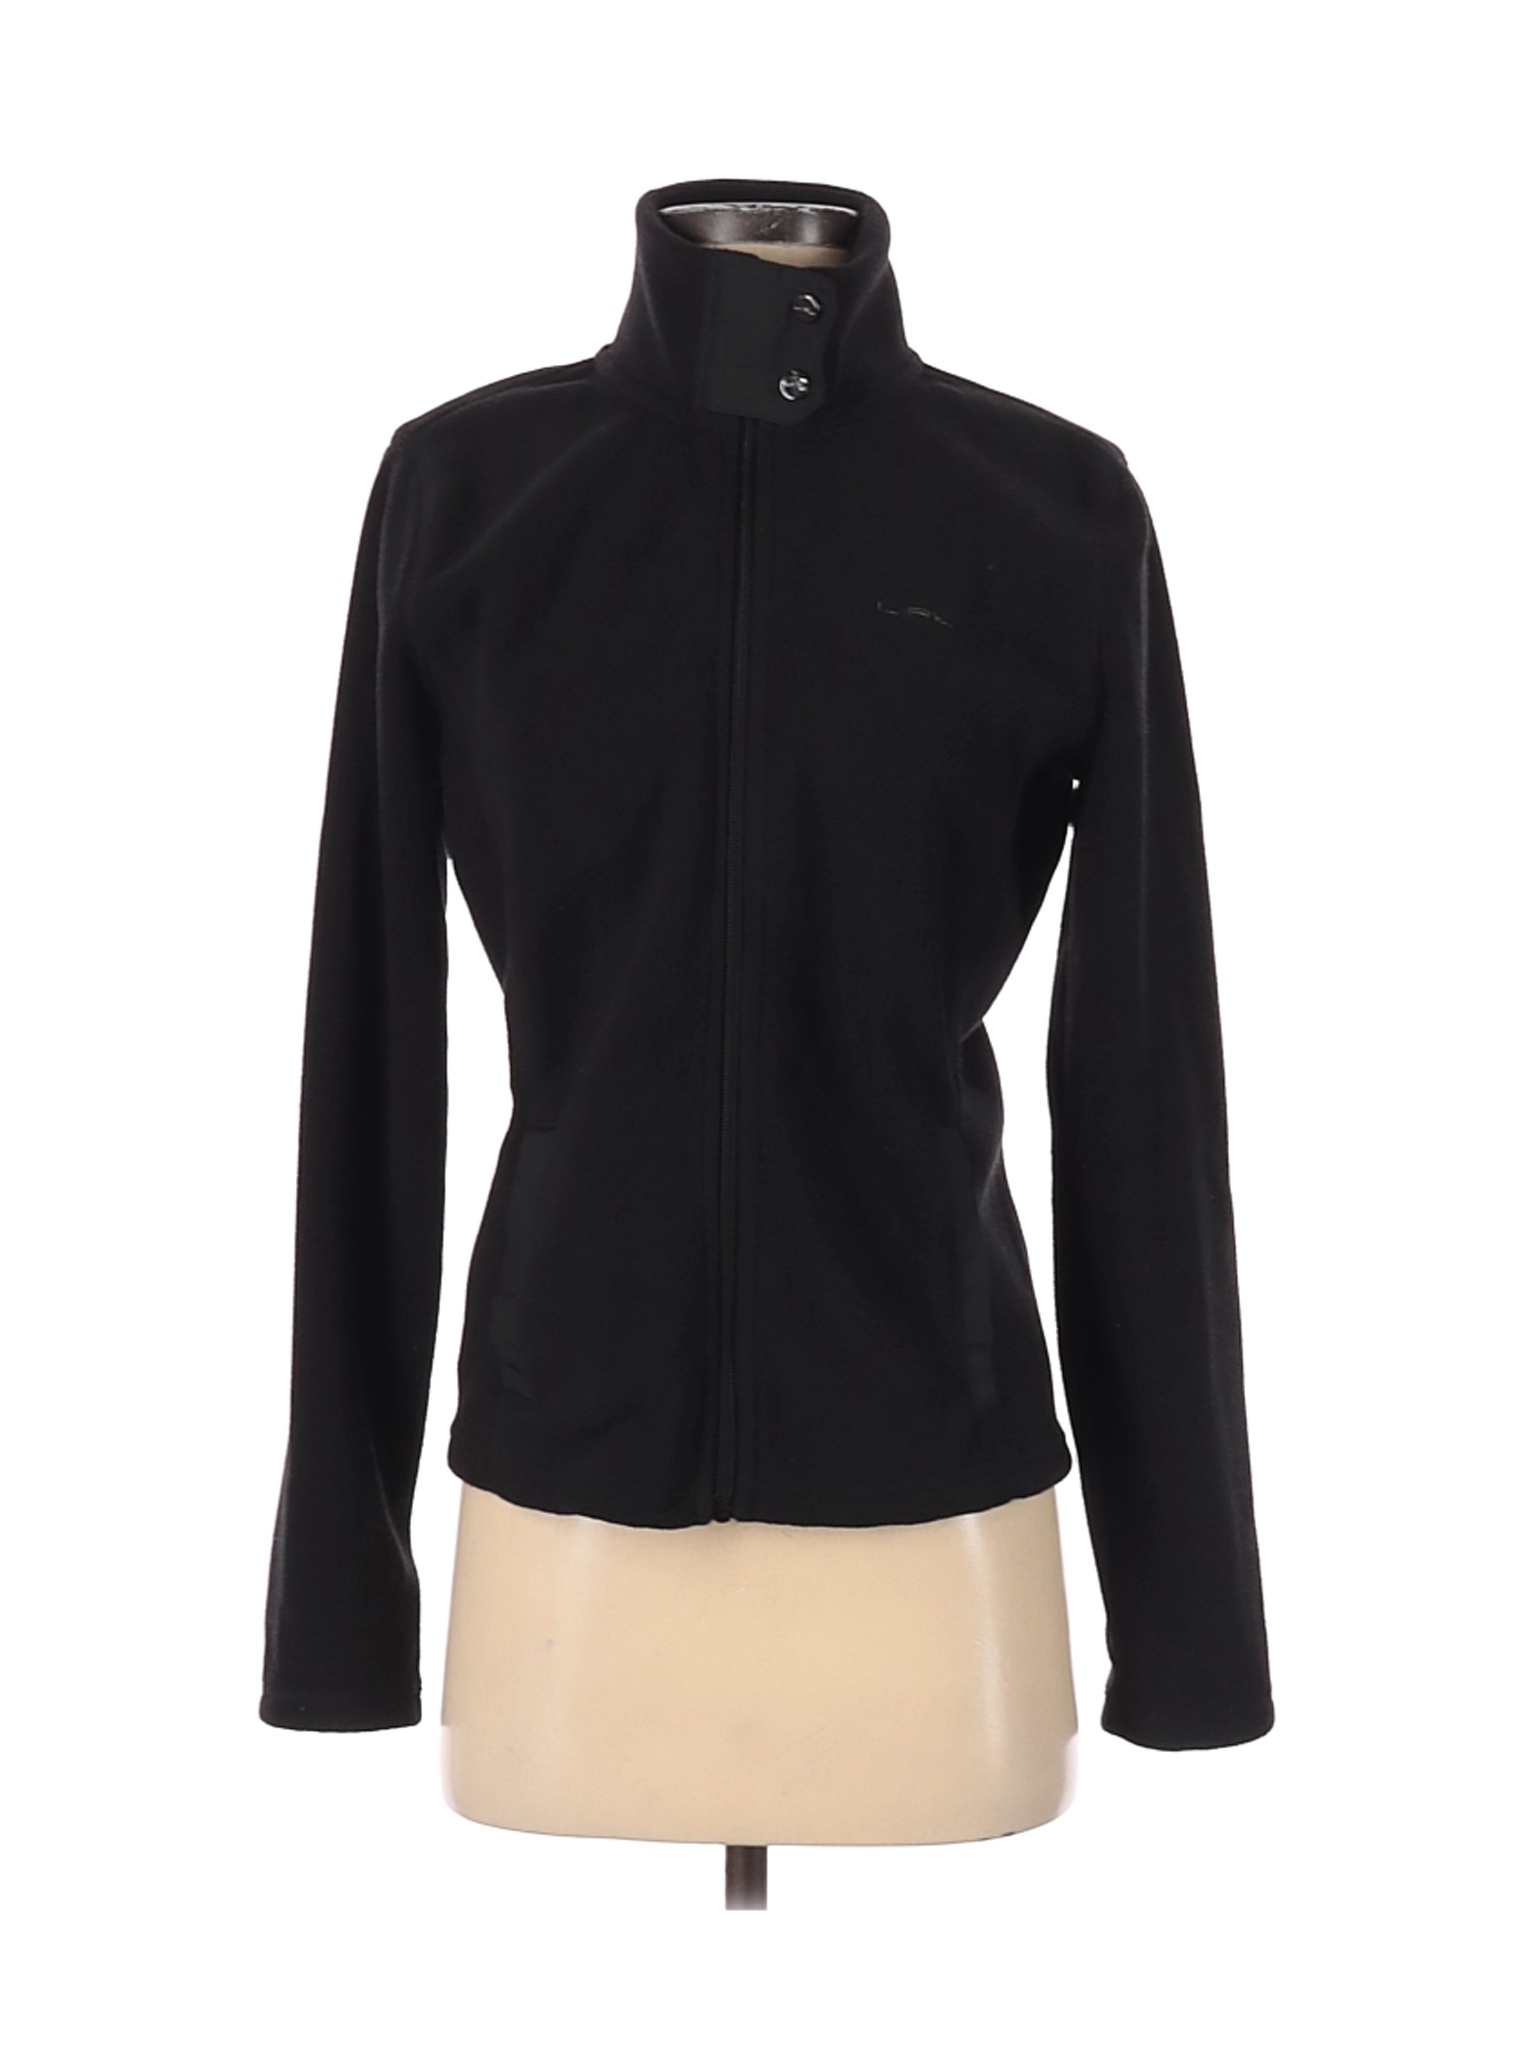 L-RL Lauren Active Ralph Lauren Women Black Jacket S | eBay